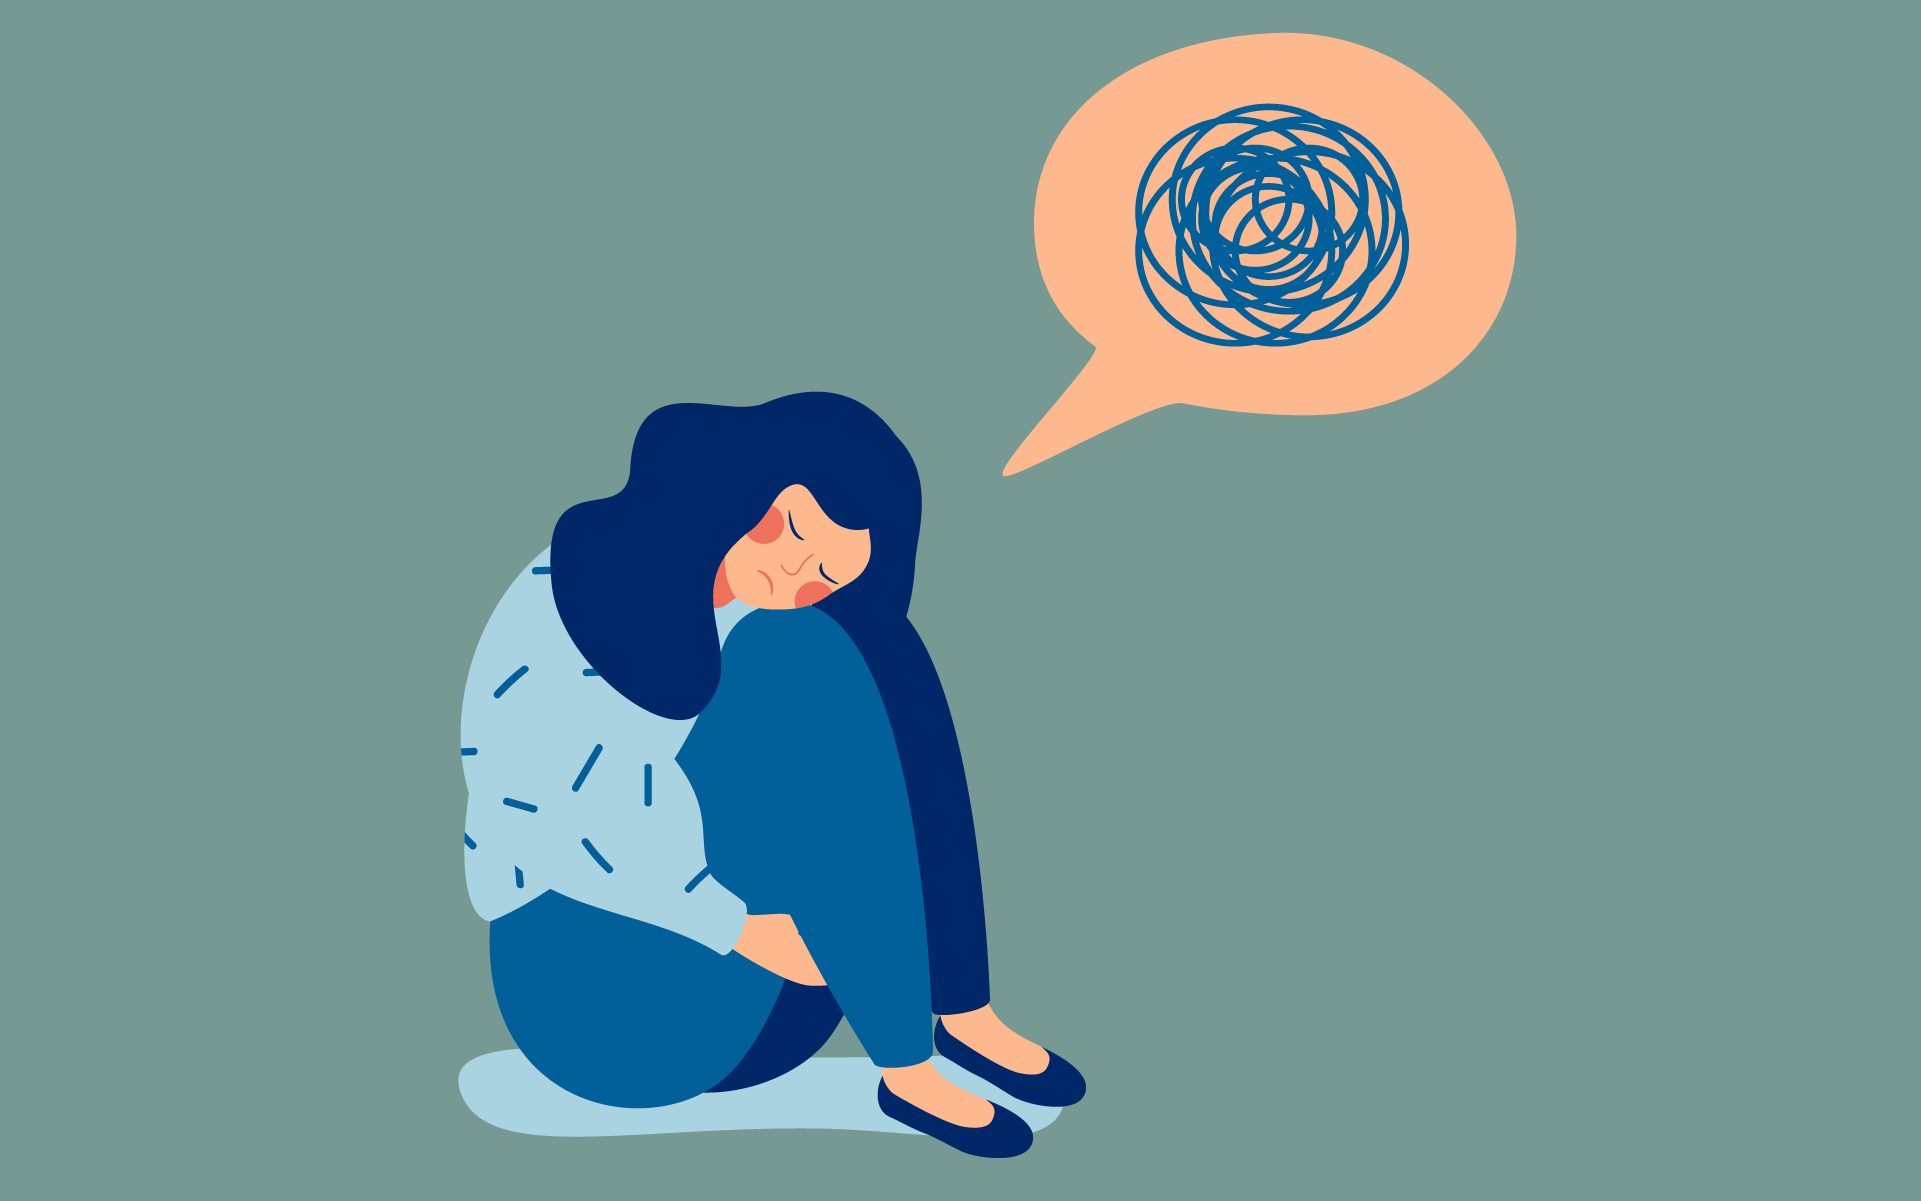 कोरोना से जुड़ी हर वक्त की चिंता बना सकती है अवसाद का शिकार